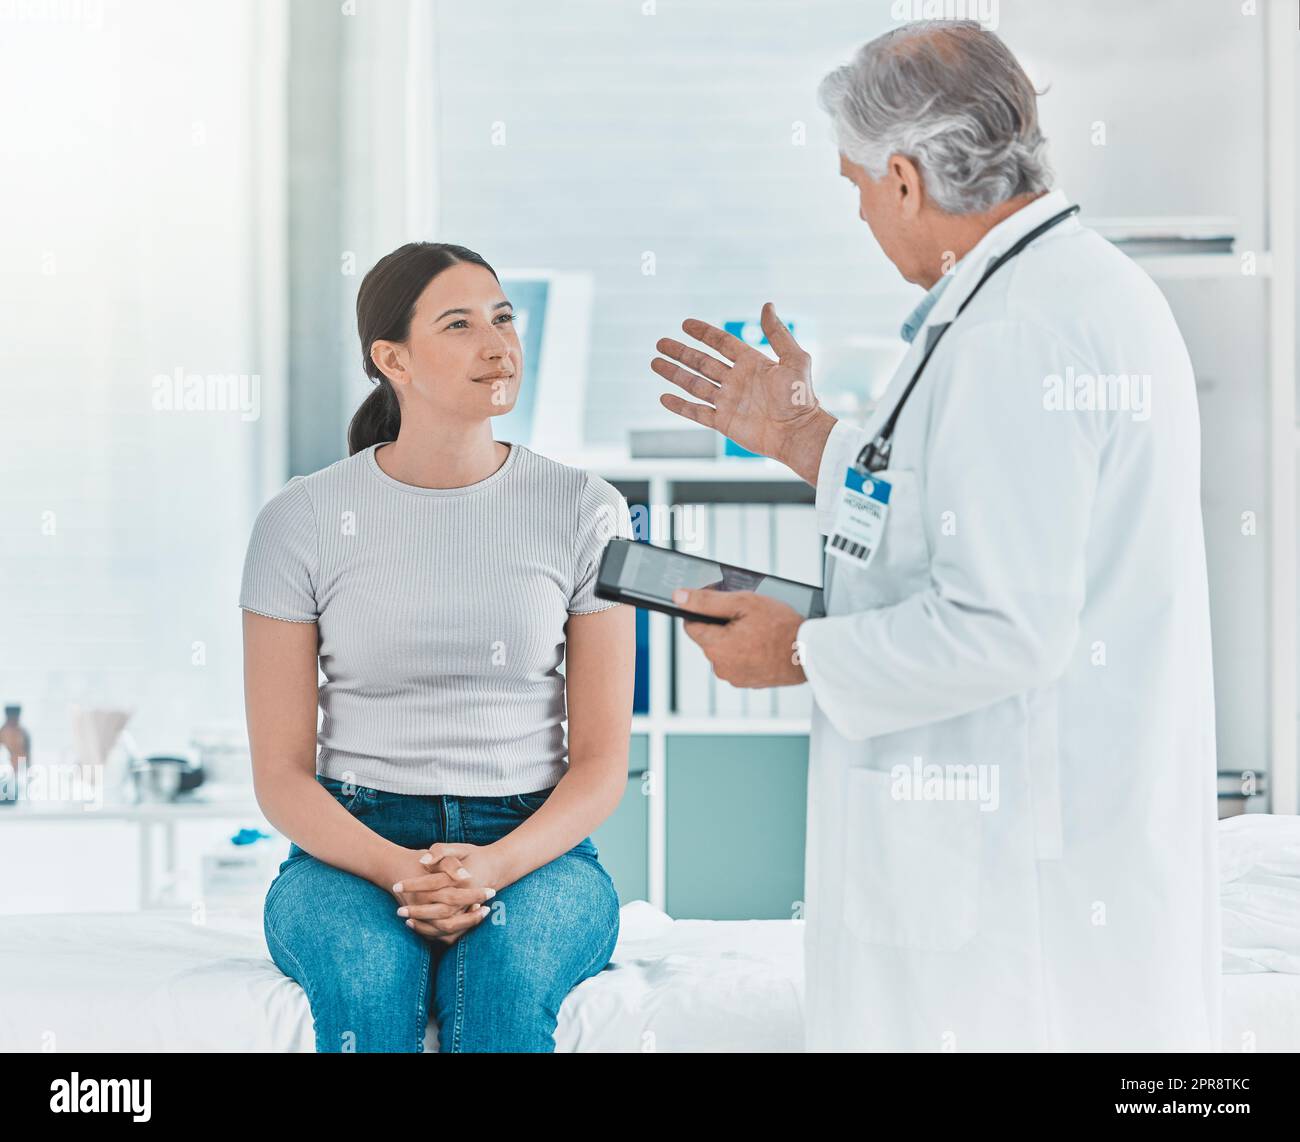 Le nouveau traitement est expérimental. Un médecin discutant des résultats d'un patient avec elle à l'aide d'un comprimé numérique. Banque D'Images